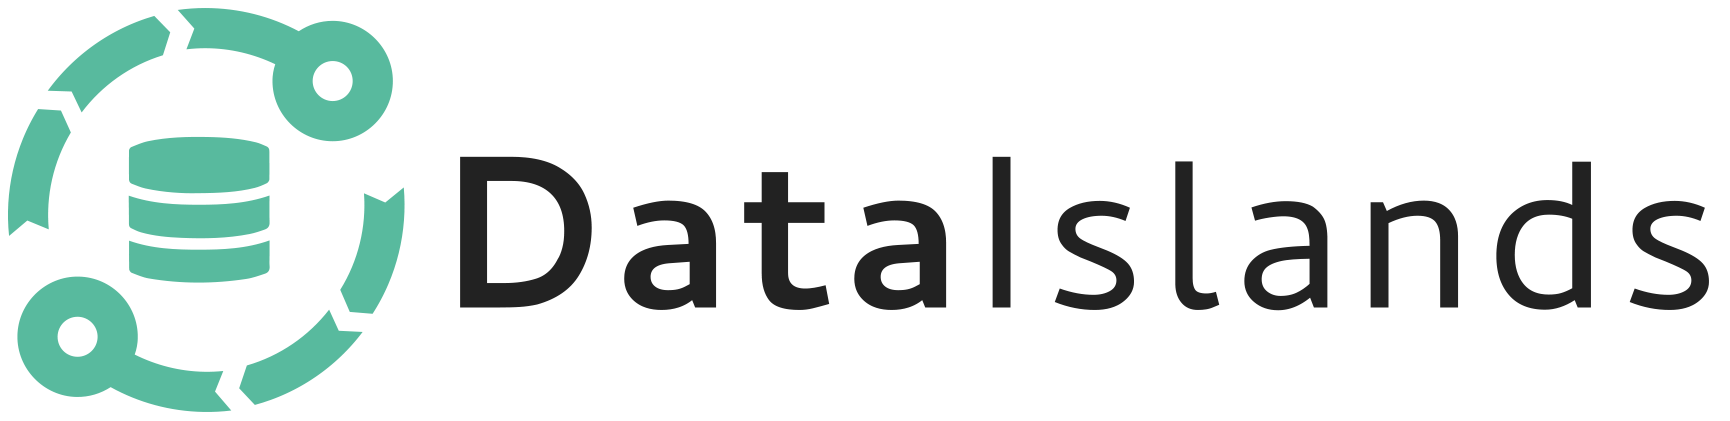 Data Islands Logo